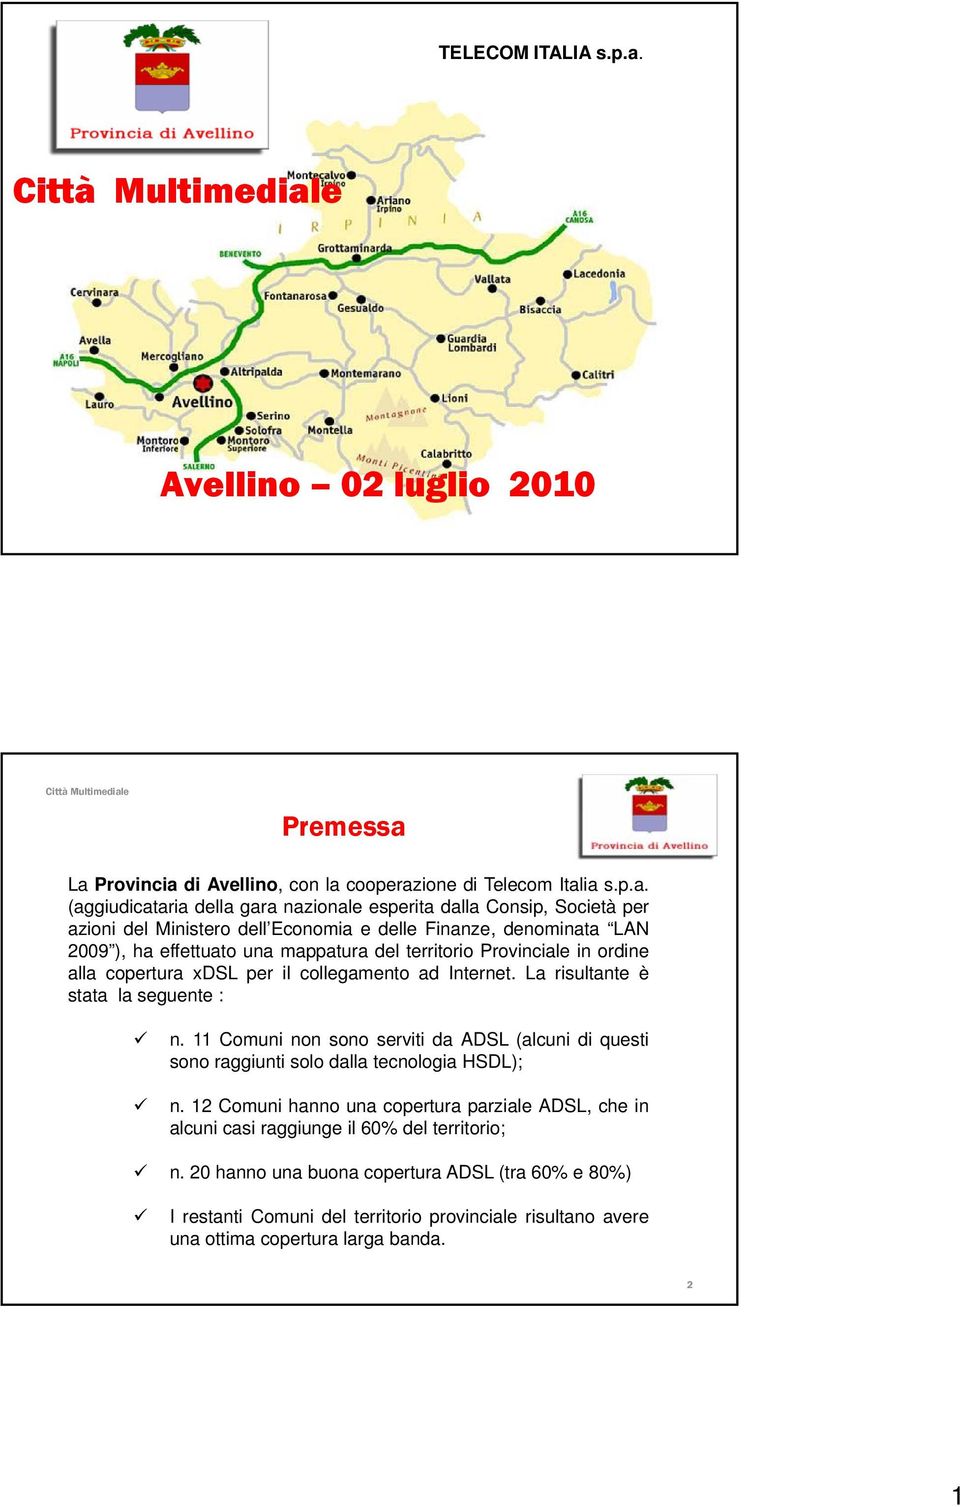 La Provincia di Avellino, con la cooperazione di Telecom Italia s.p.a. (aggiudicataria della gara nazionale esperita dalla Consip, Società per azioni del Ministero dell Economia e delle Finanze,